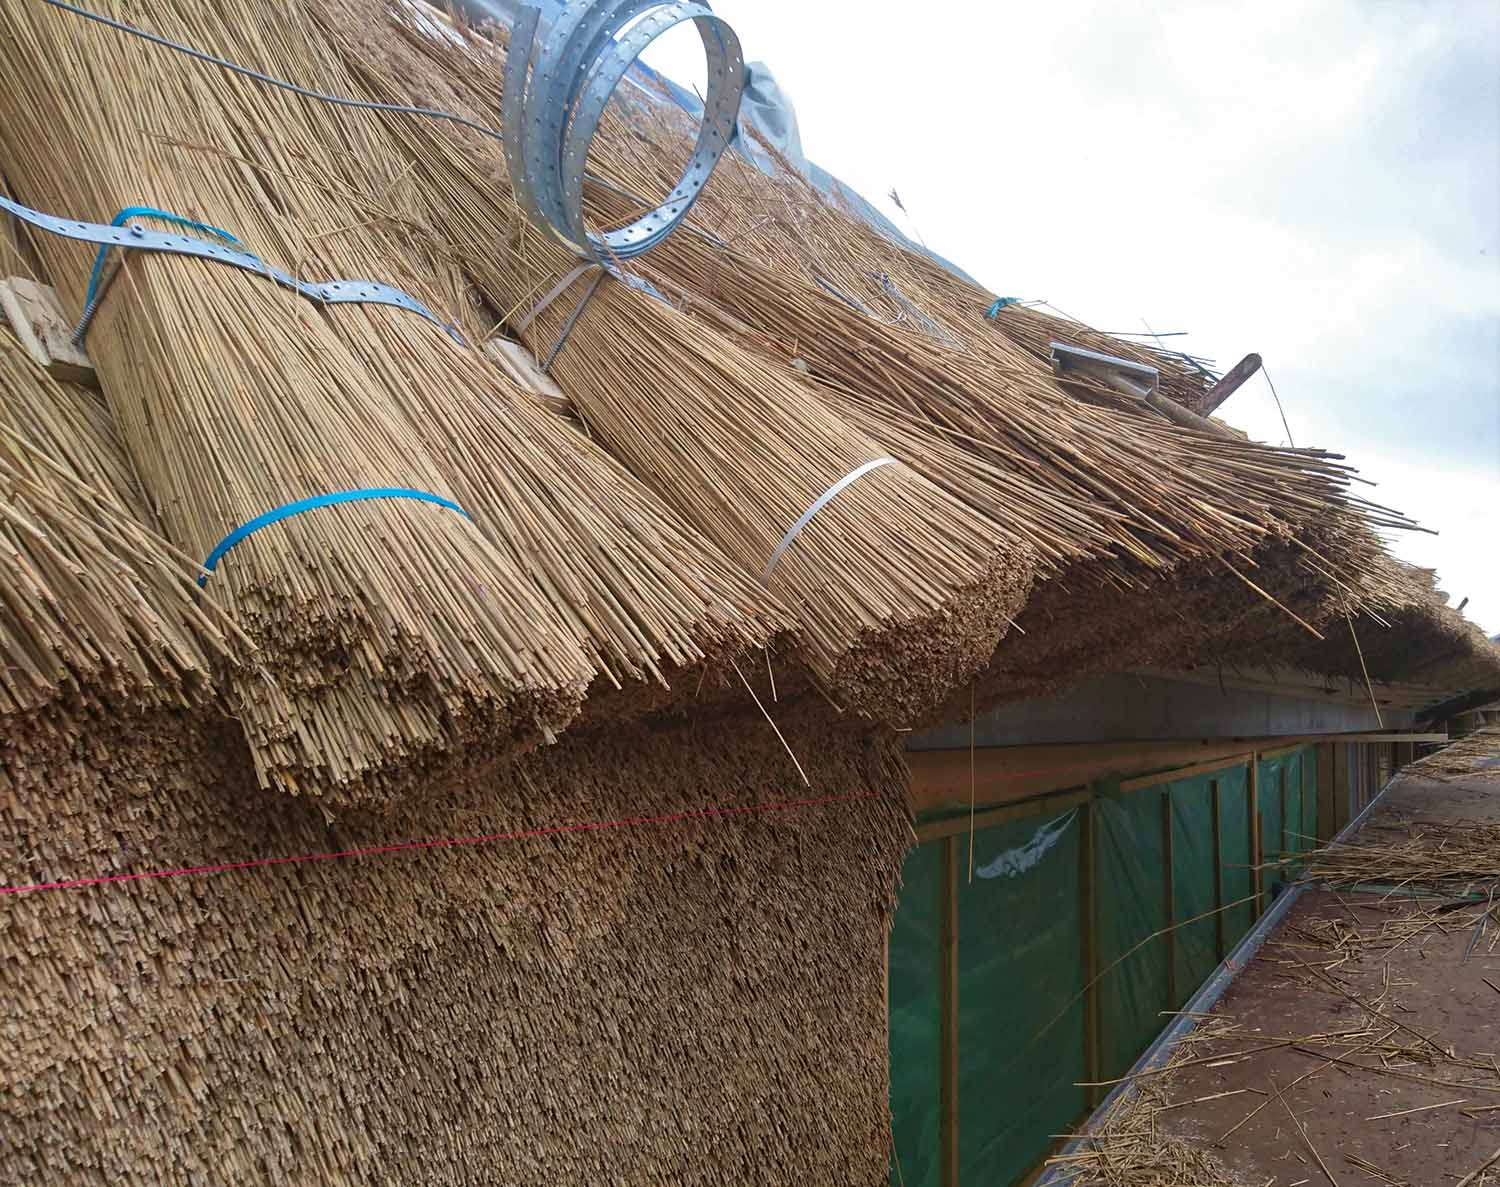 La tecnica di costruzione del tetto di canne è artigianale e crea una superficie altamente sensoriale e strutturata | © Dorte Mandrup courtesy Dorte Mandrup